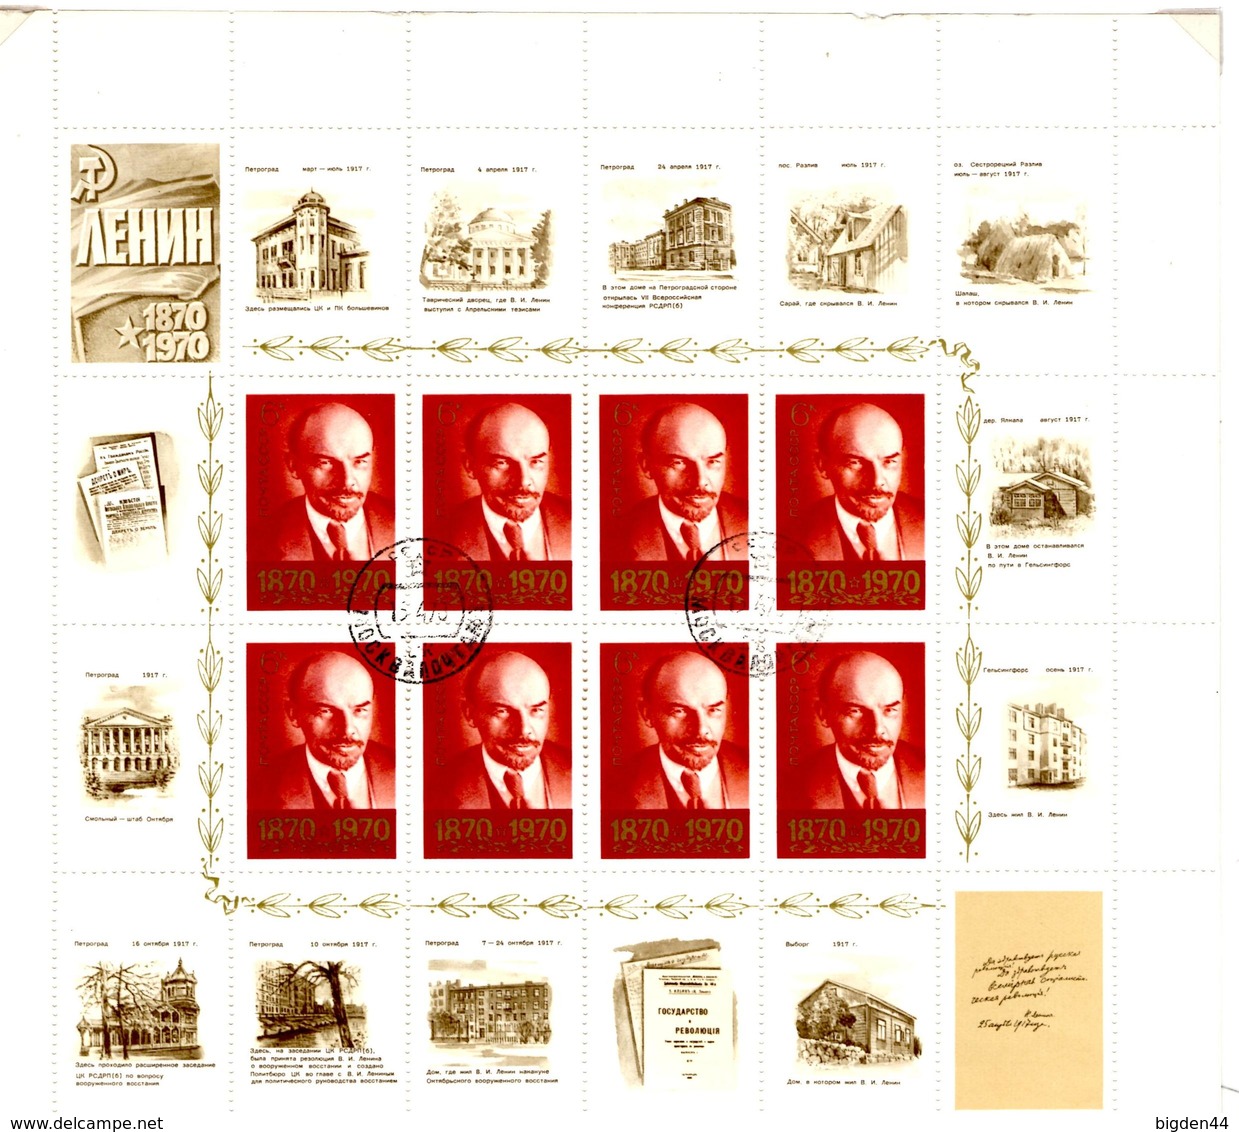 9 Bloc Feuillets / Souvenir Sheets URSS_Lenine_1970_cancelled But Not Hinged, Good Quality - Feuilles Complètes